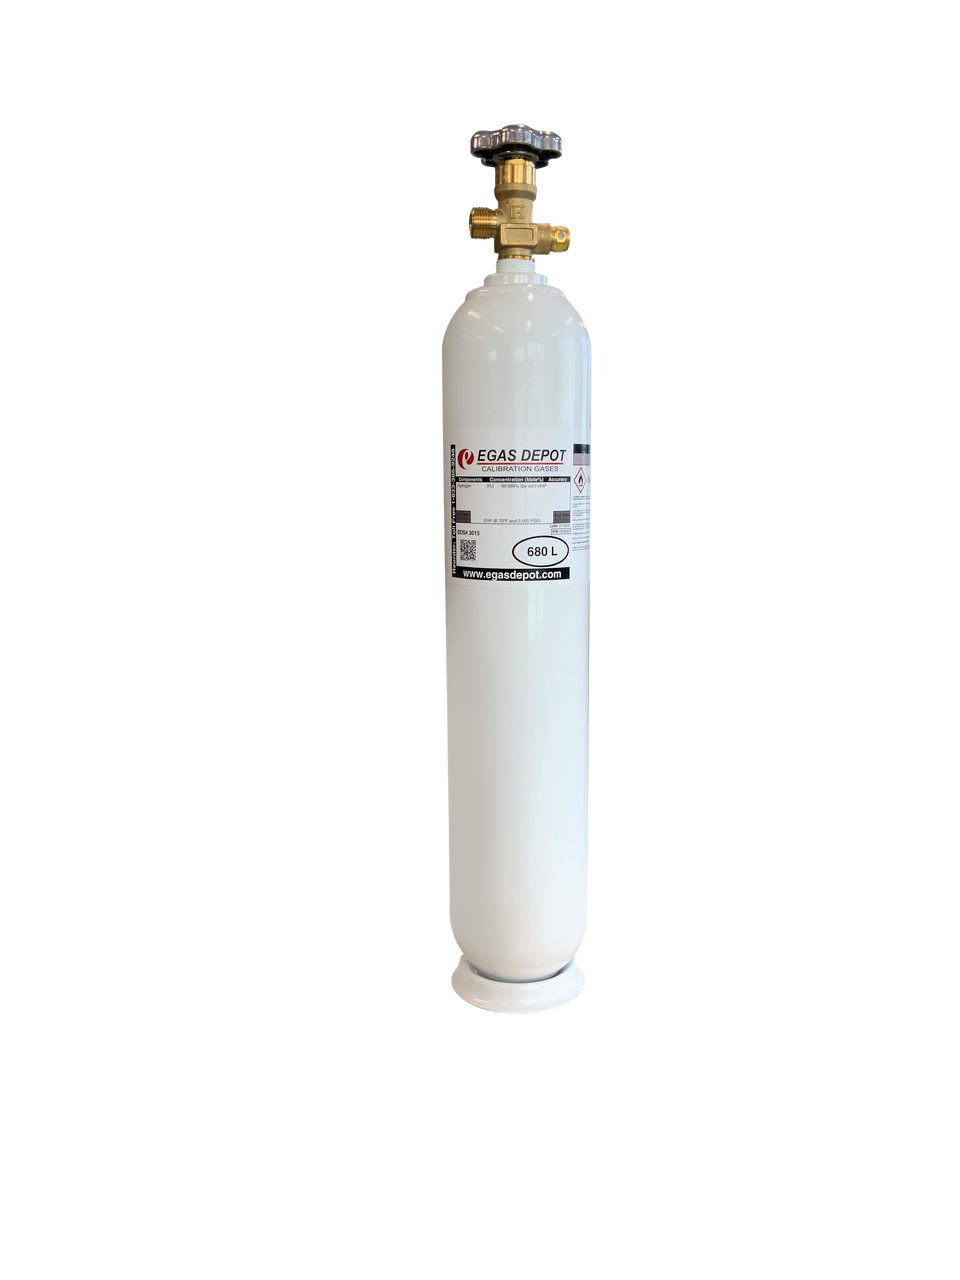 680 Liter-Carbon Monoxide 400 ppm/ Air